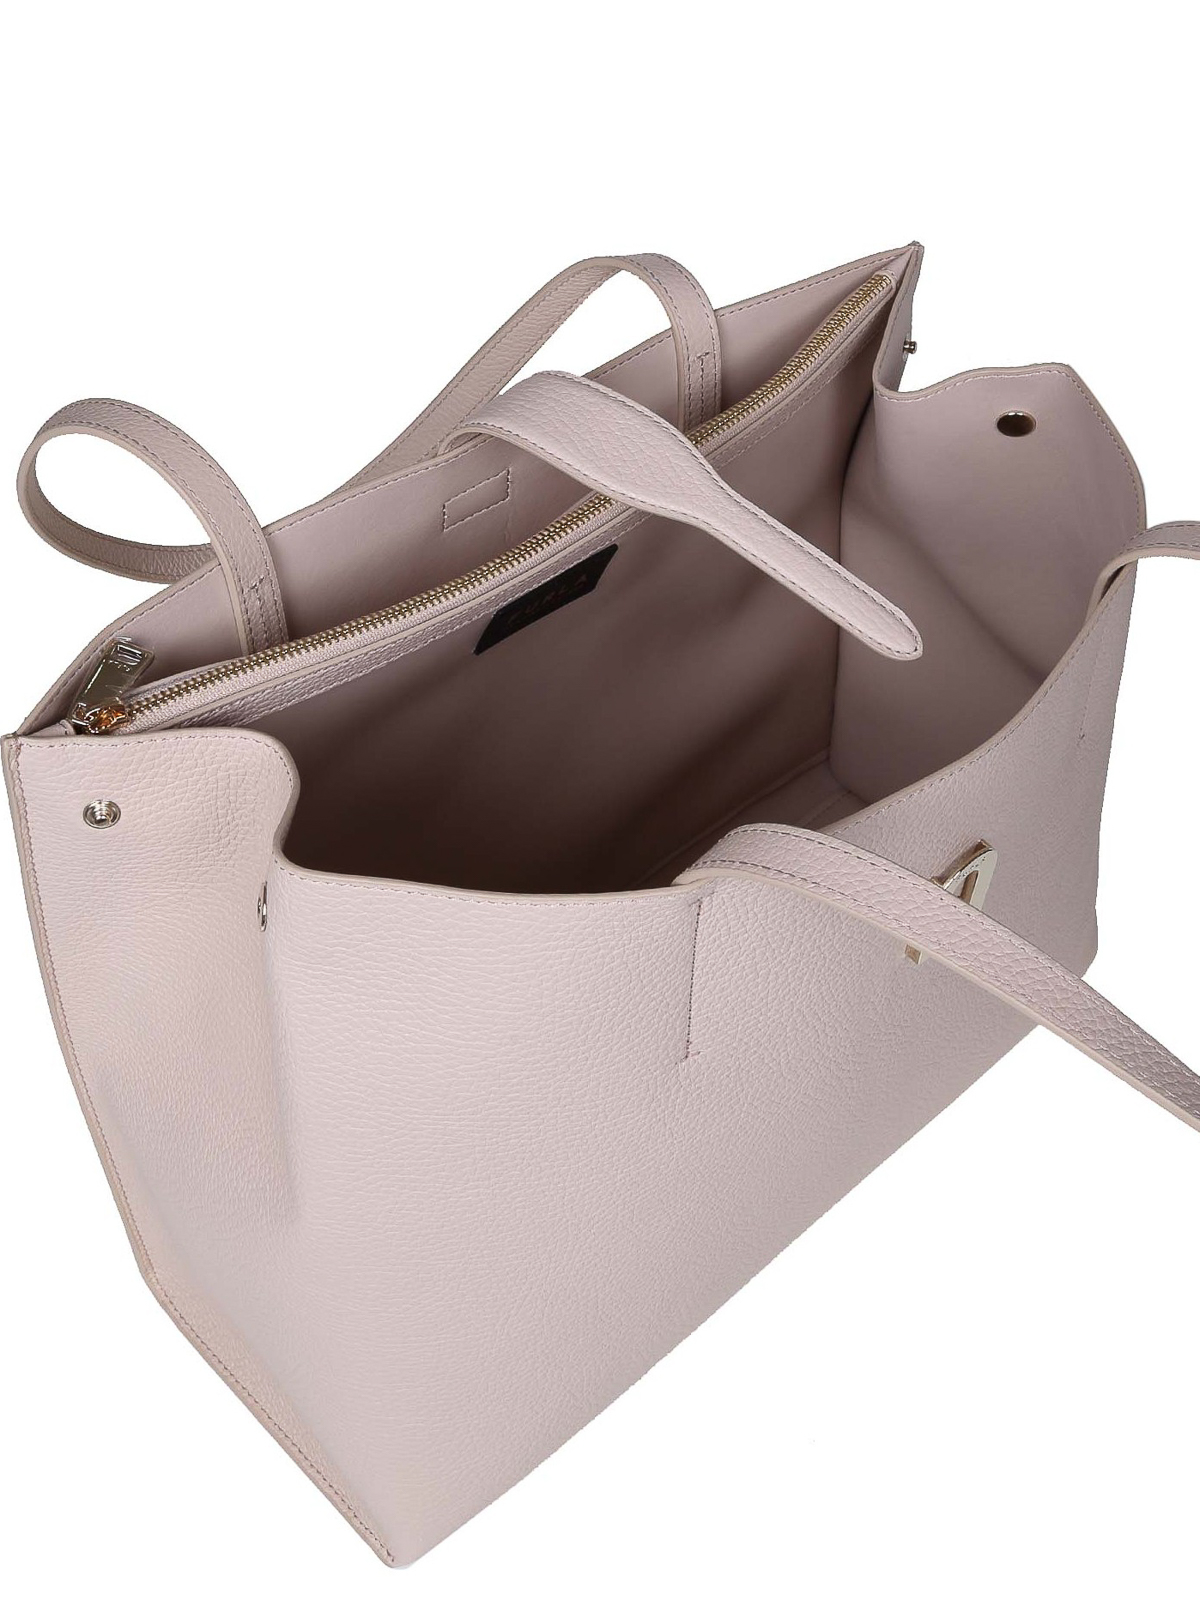 Shoulder bags Furla - Sofia l tote shoulder bag in leather